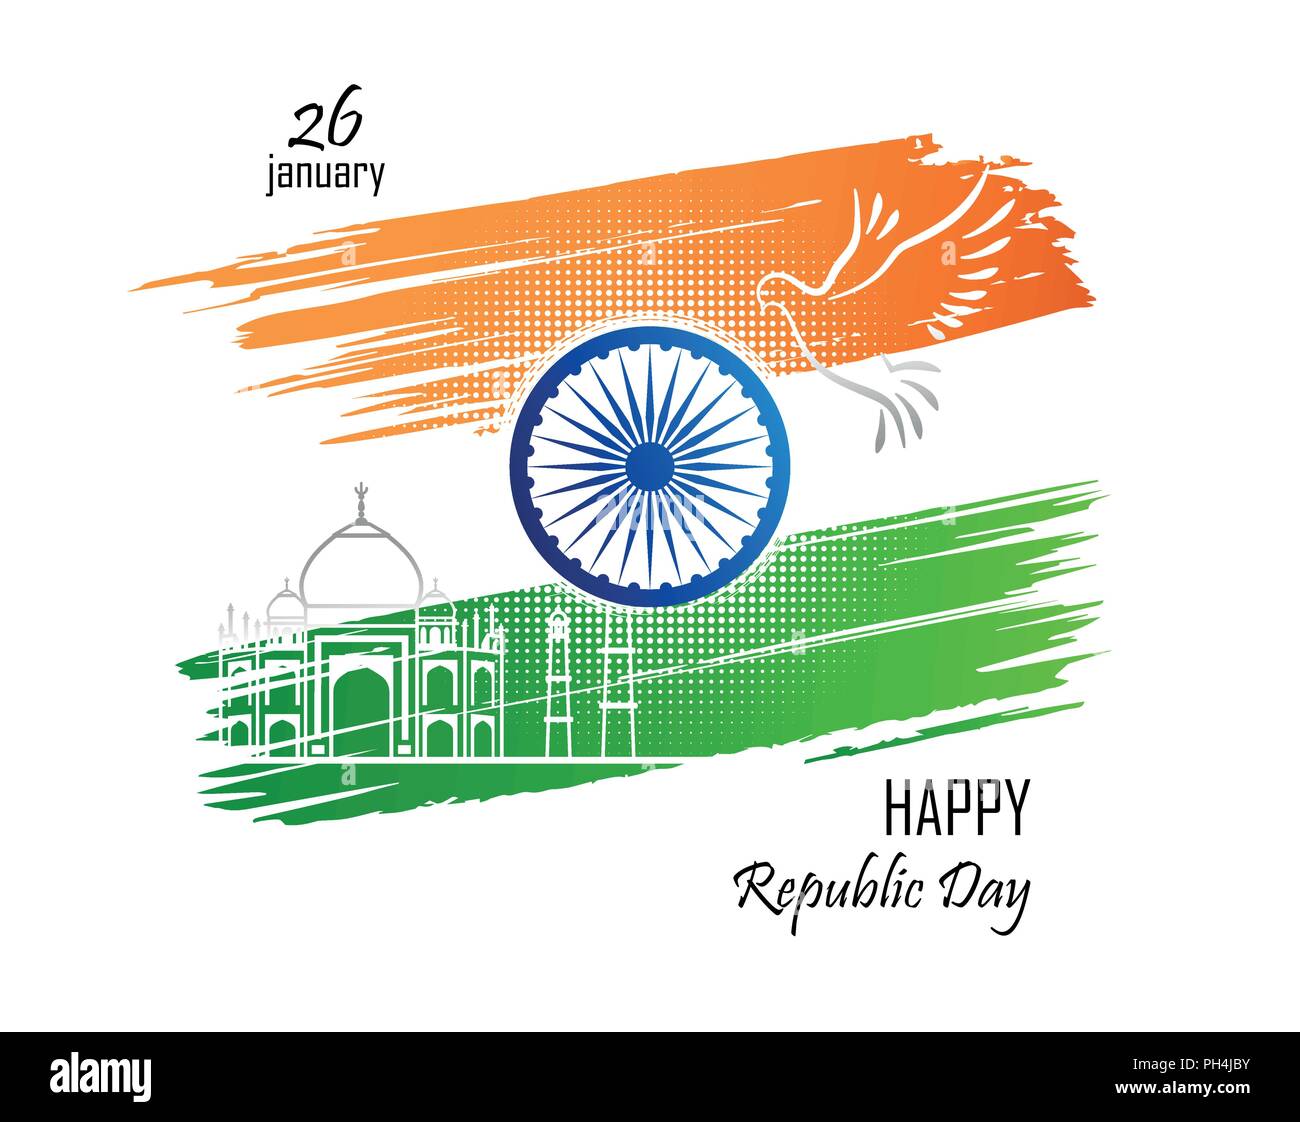 26 janvier. La journée de la République de l'Inde. Couleurs abstraites du drapeau indien avec le chakra d'Ashoka, colombe et croquis du Taj Mahal. Vector illustration. Illustration de Vecteur